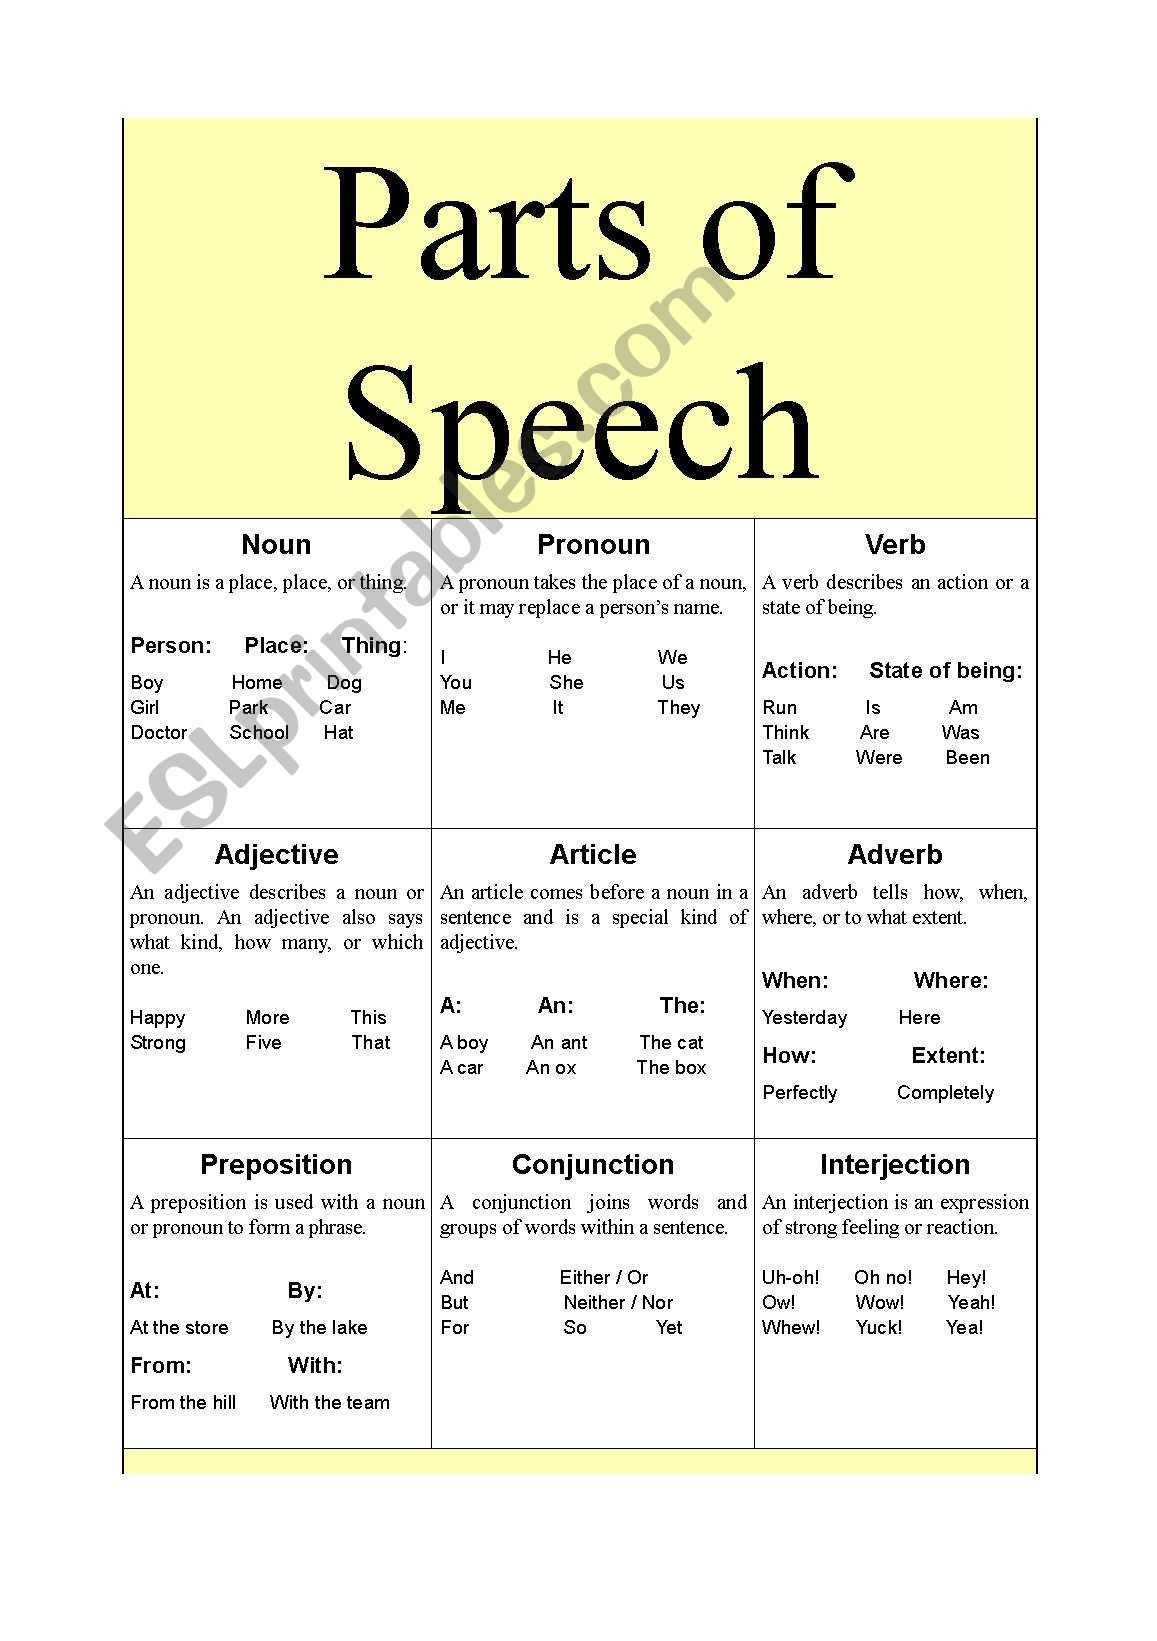 Parts of Speech - ESL worksheet by hayanie22 Intended For Parts Of Speech Worksheet Pdf